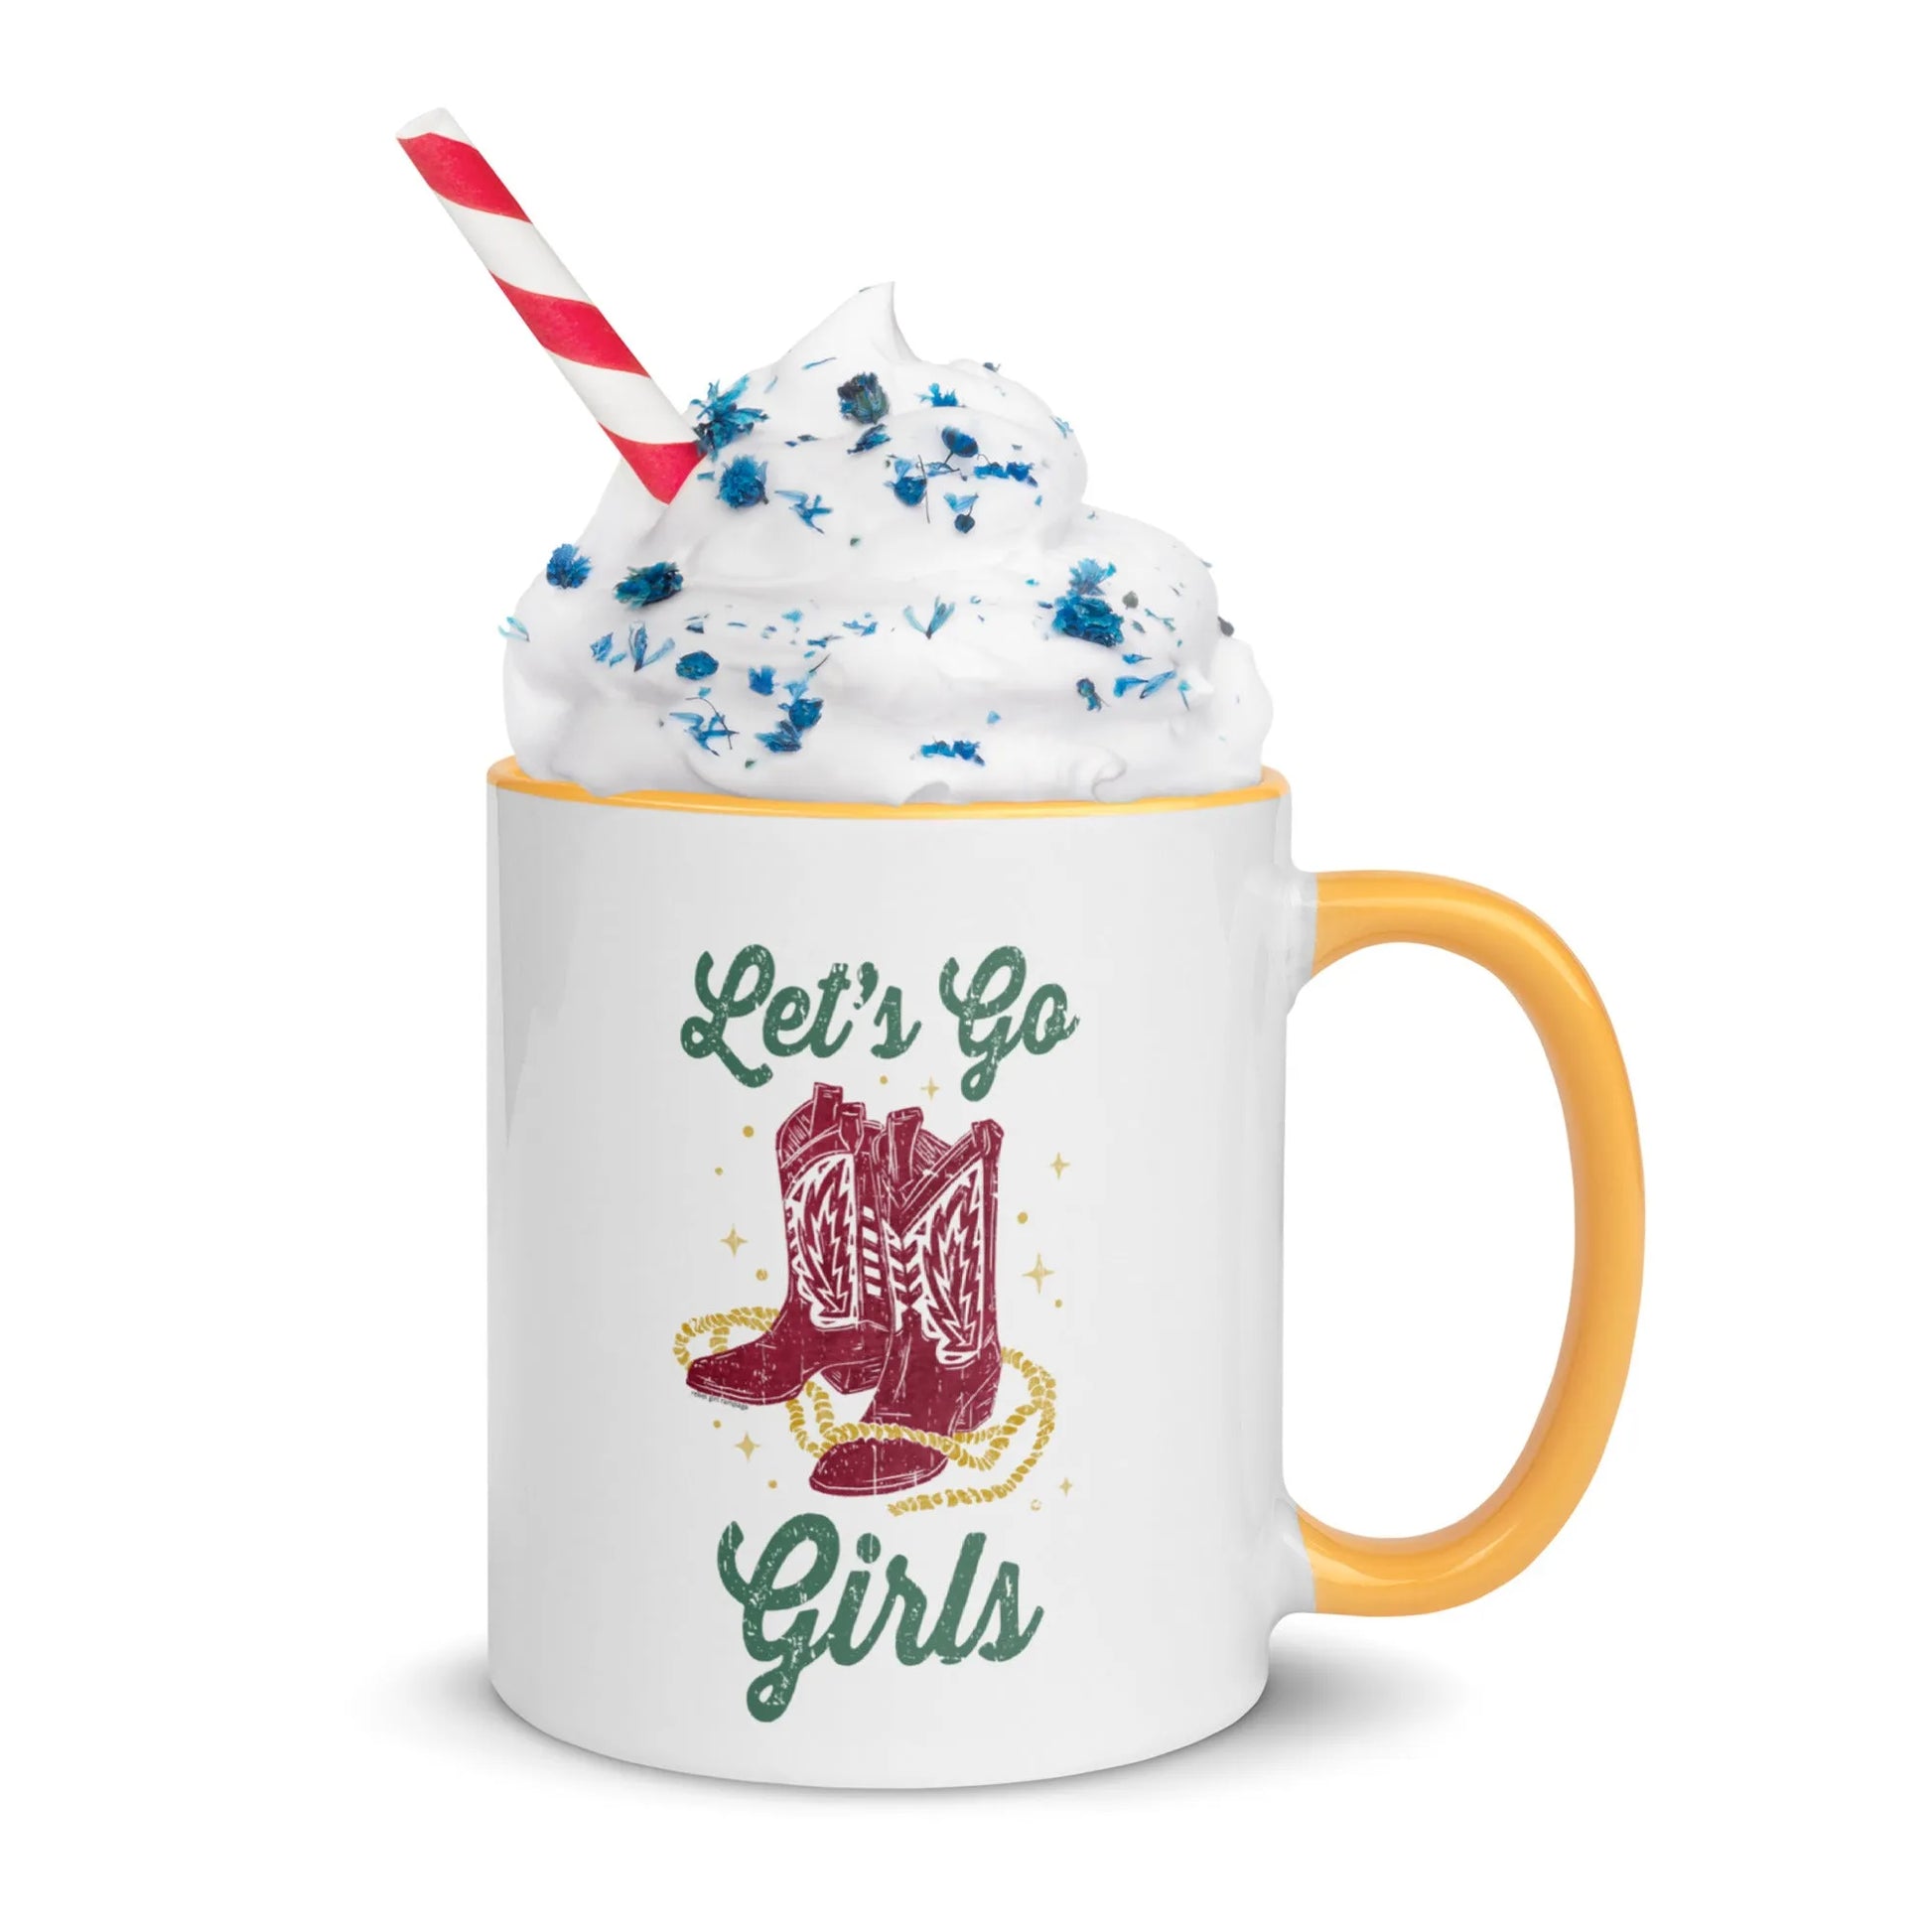 Let’s Go Girls Ceramic Coffee Mug